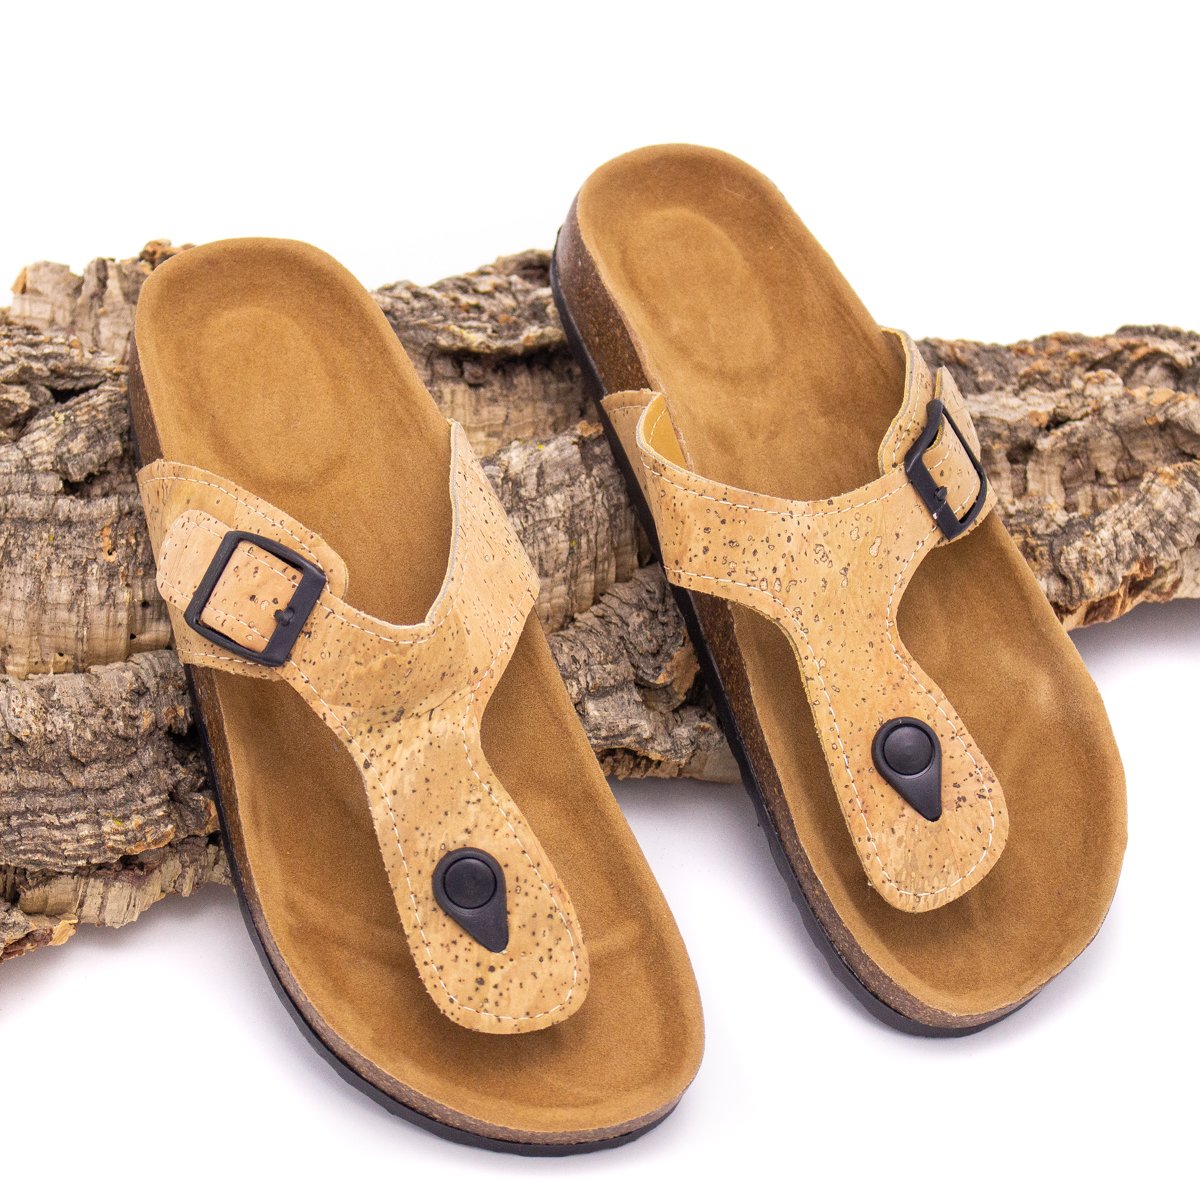 Sandales d’été en liège naturel - Sandales de mode plage - Sandales de vacances L-503 